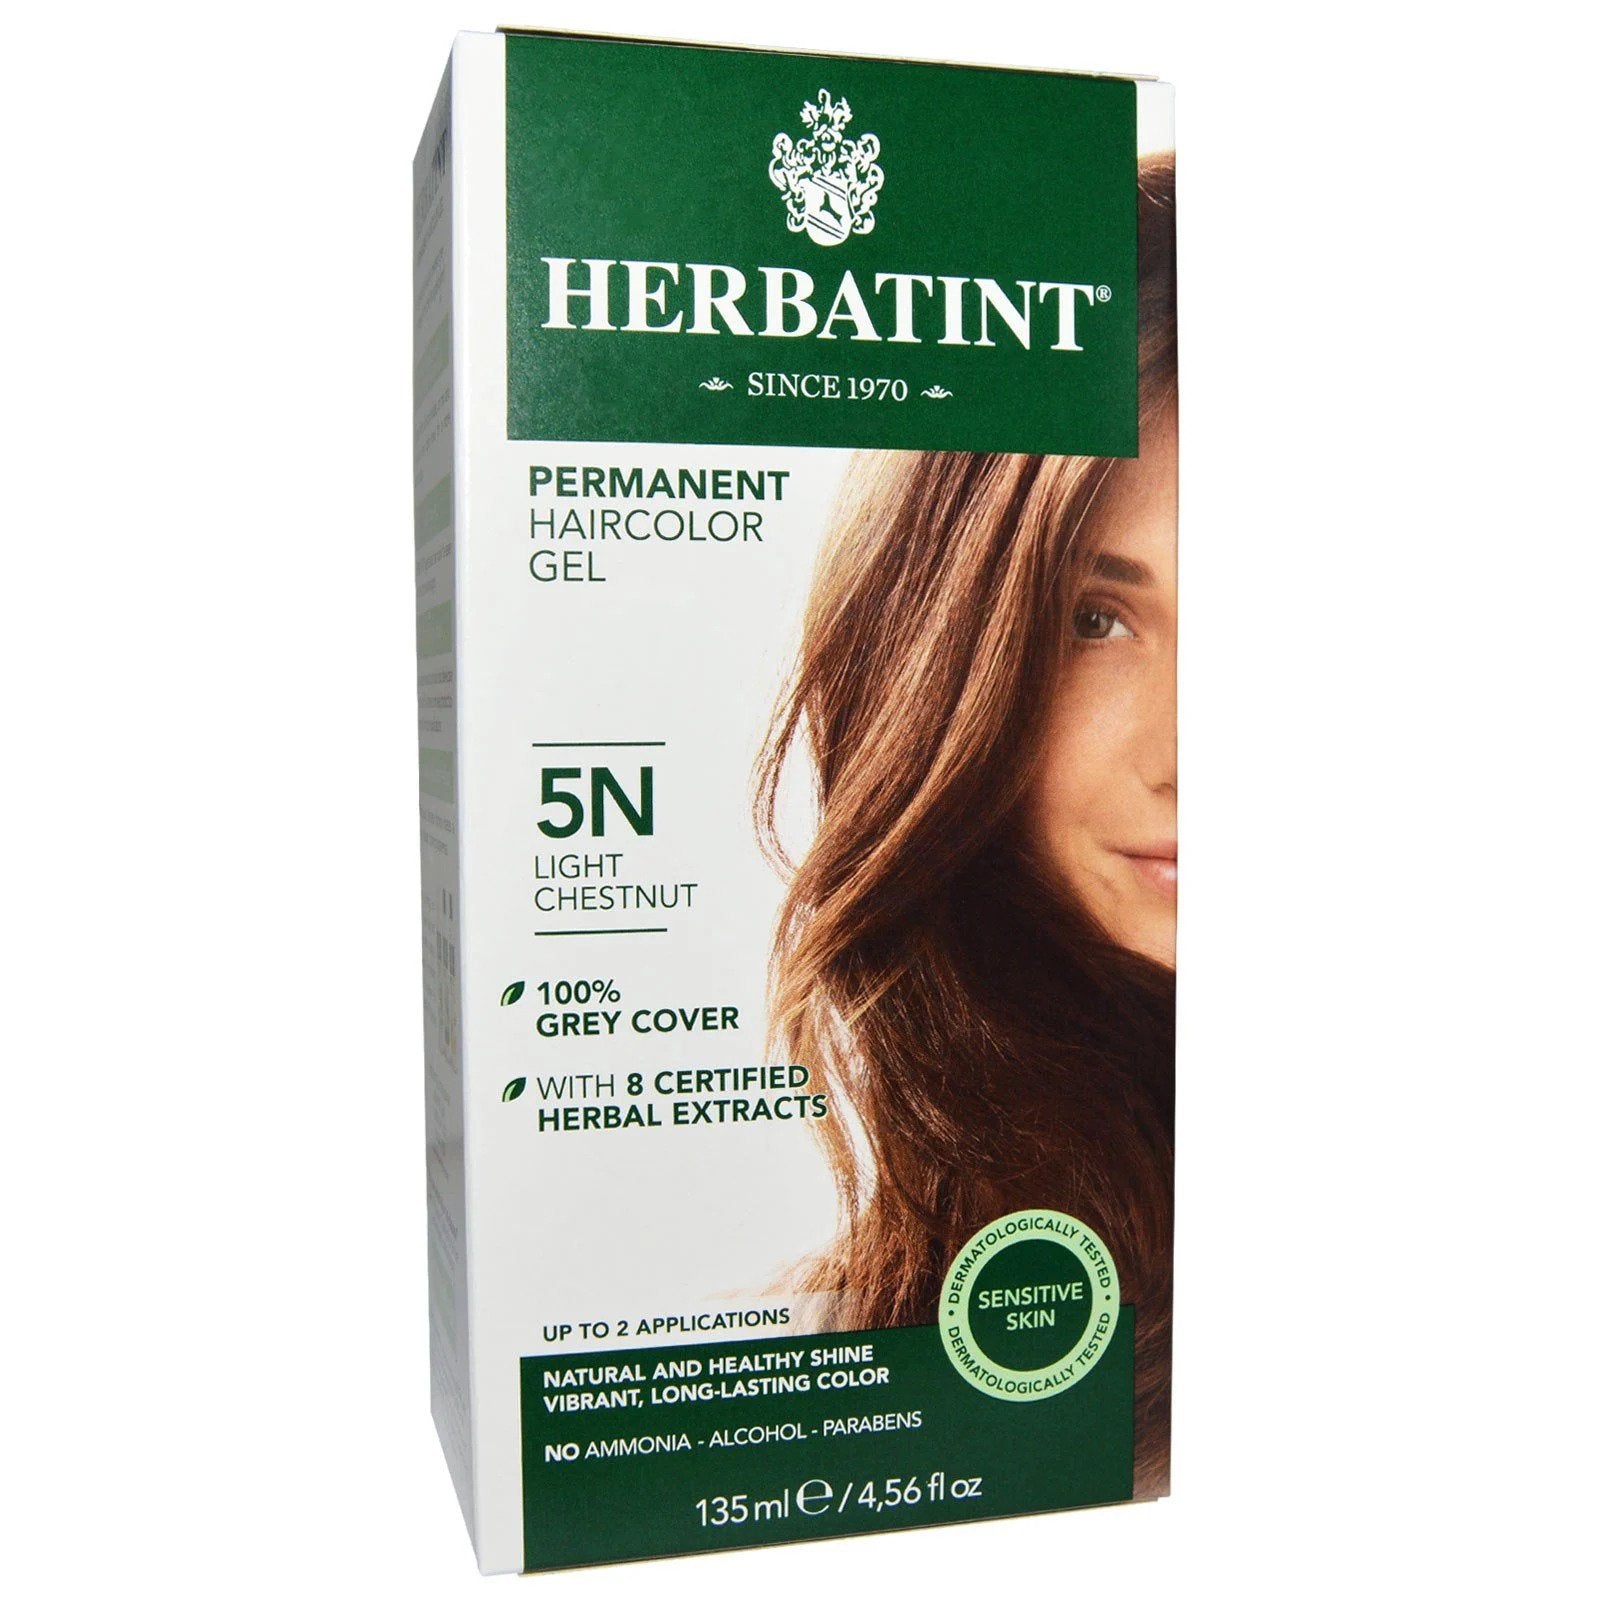 Herbatint - Permanent Haircolor Gel (5N - Light Chestnut)